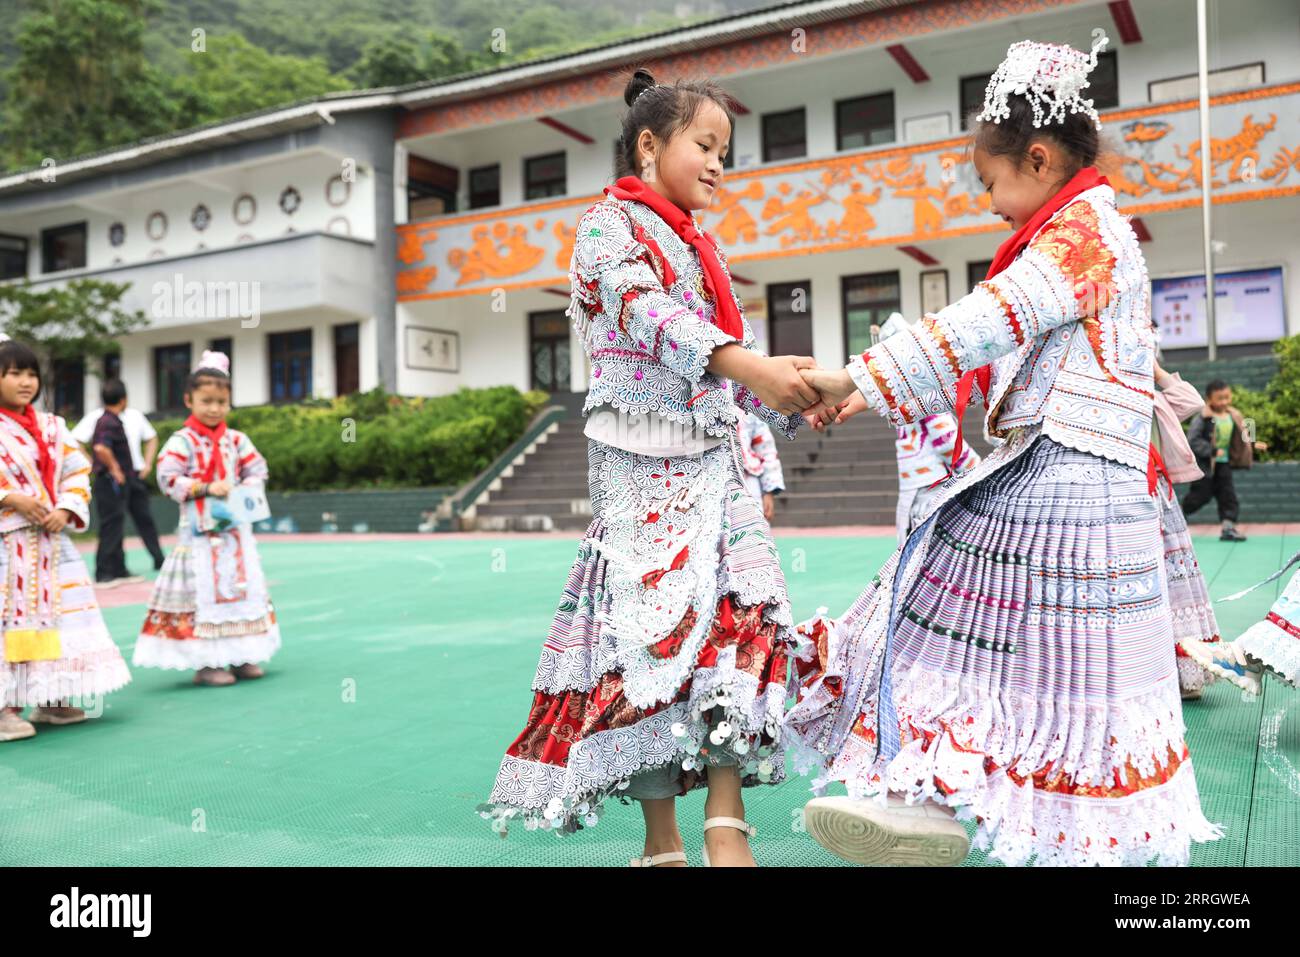 220601 -- GUIZHOU, le 1 juin 2022 -- Yang Yameng 2e R danse avec son camarade de classe Yang Guoyu dans une école primaire du village de Huawu, dans le canton de Xinren Miao, ville de Qianxi, province du Guizhou au sud-ouest de la Chine, le 1 juin 2022. Yang Yameng est un élève vivant dans le village de Huawu, dans la province du Guizhou du sud-ouest de la Chine. Sa ville natale était autrefois un village extrêmement pauvre. Ces dernières années, grâce à un ensemble de politiques de soutien, la pauvreté a été éliminée dans le village en stimulant les industries de culture et d'élevage ainsi que la promotion du tourisme, et les villageois ont déjà accès aux routes, à l'eau supp Banque D'Images